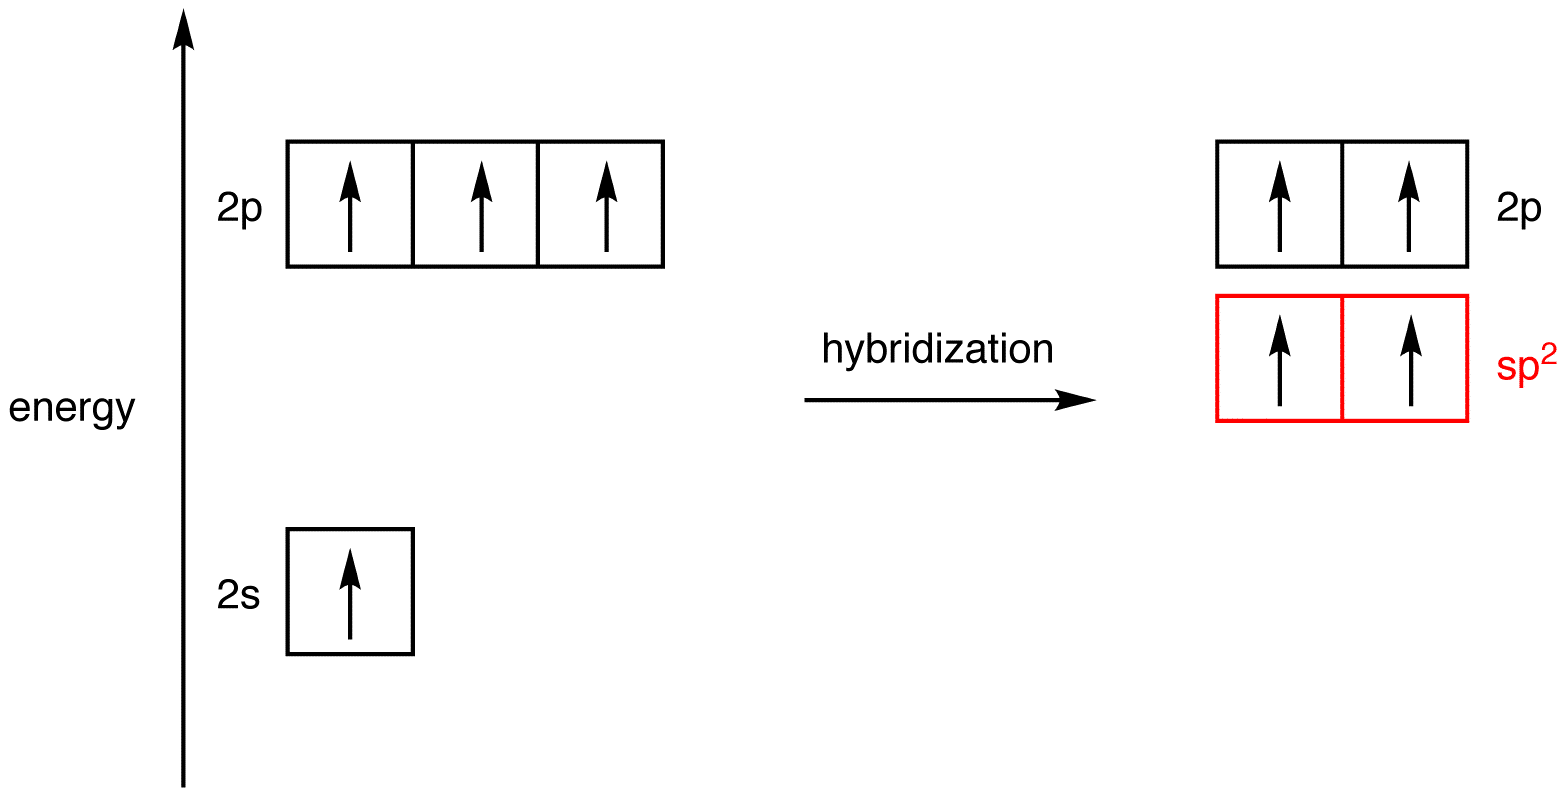 Hybridization And Shape Chart